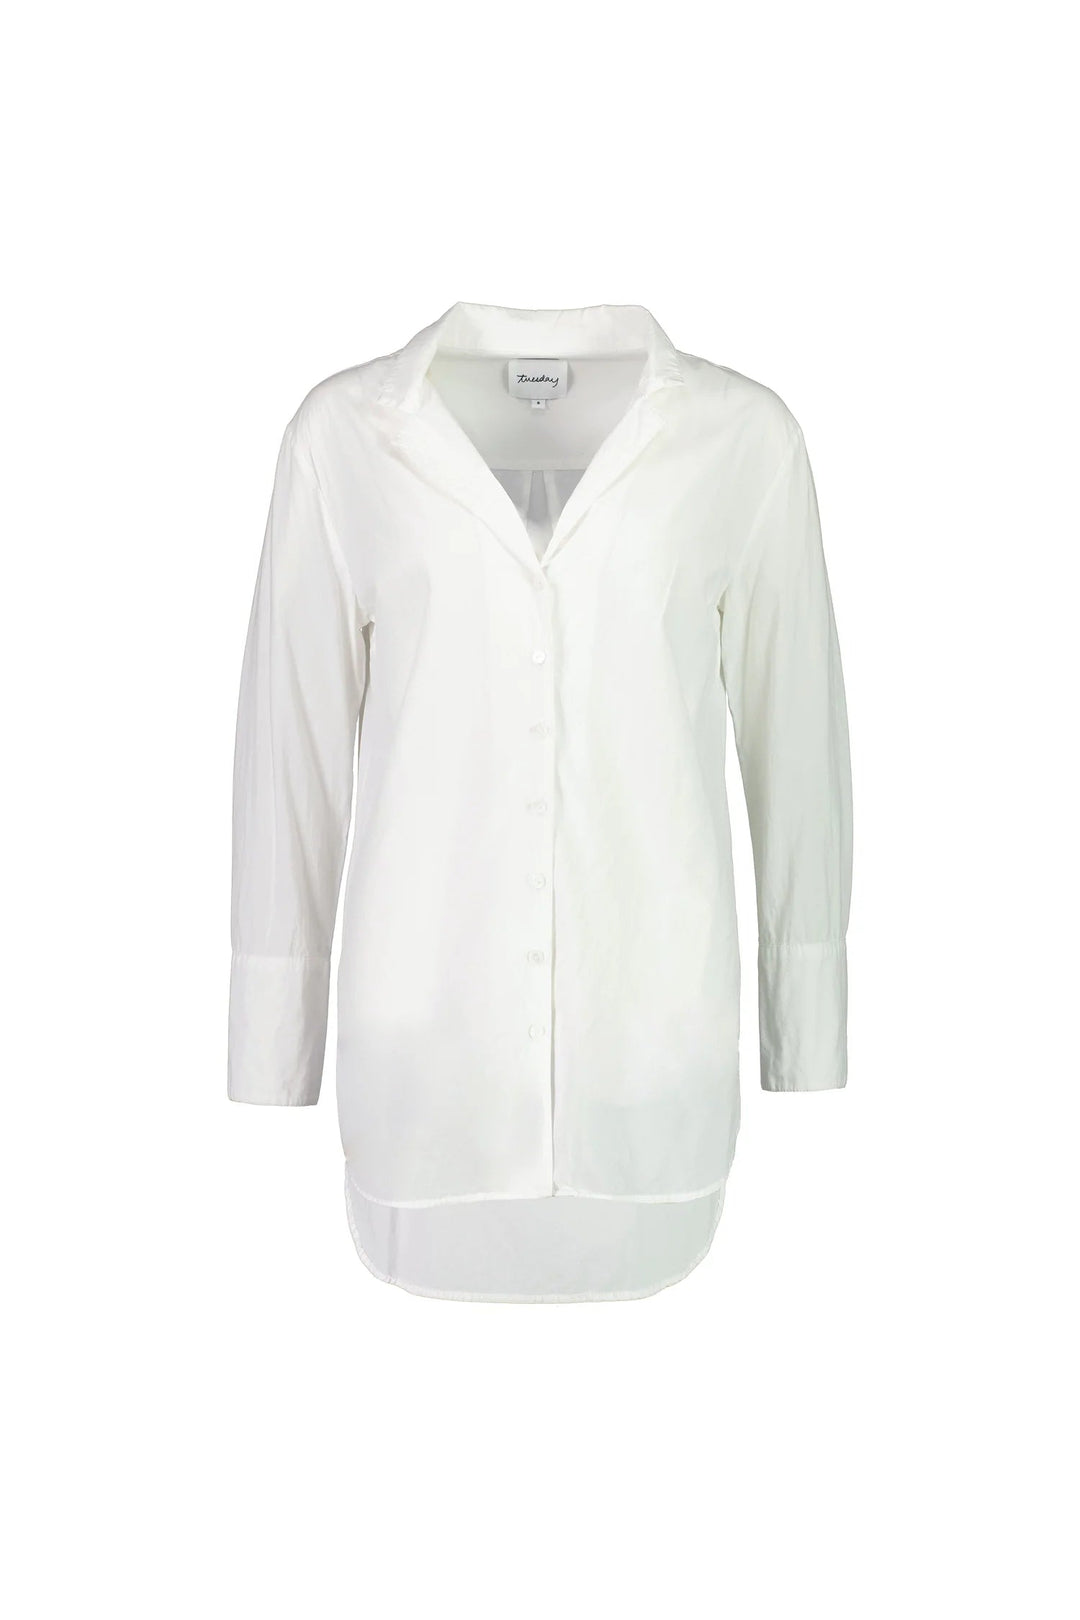 Tuesday Label Oversized Shirt - White - Shop 9